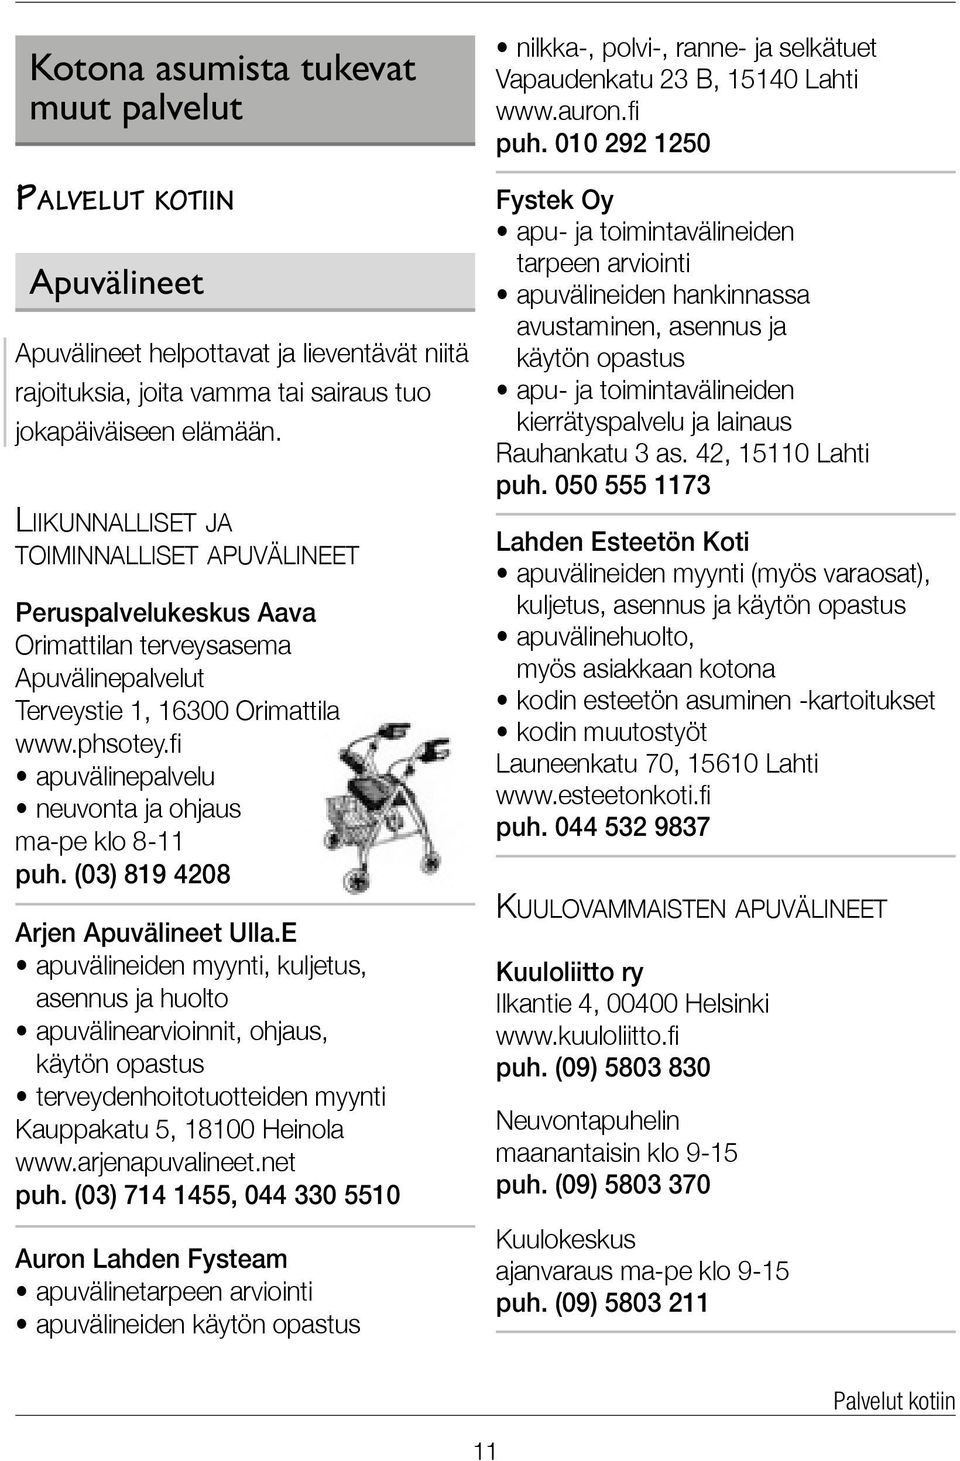 (03) 819 4208 Arjen Apuvälineet Ulla.E apuvälineiden myynti, kuljetus, asennus ja huolto apuvälinearvioinnit, ohjaus, käytön opastus terveydenhoitotuotteiden myynti Kauppakatu 5, 18100 Heinola www.